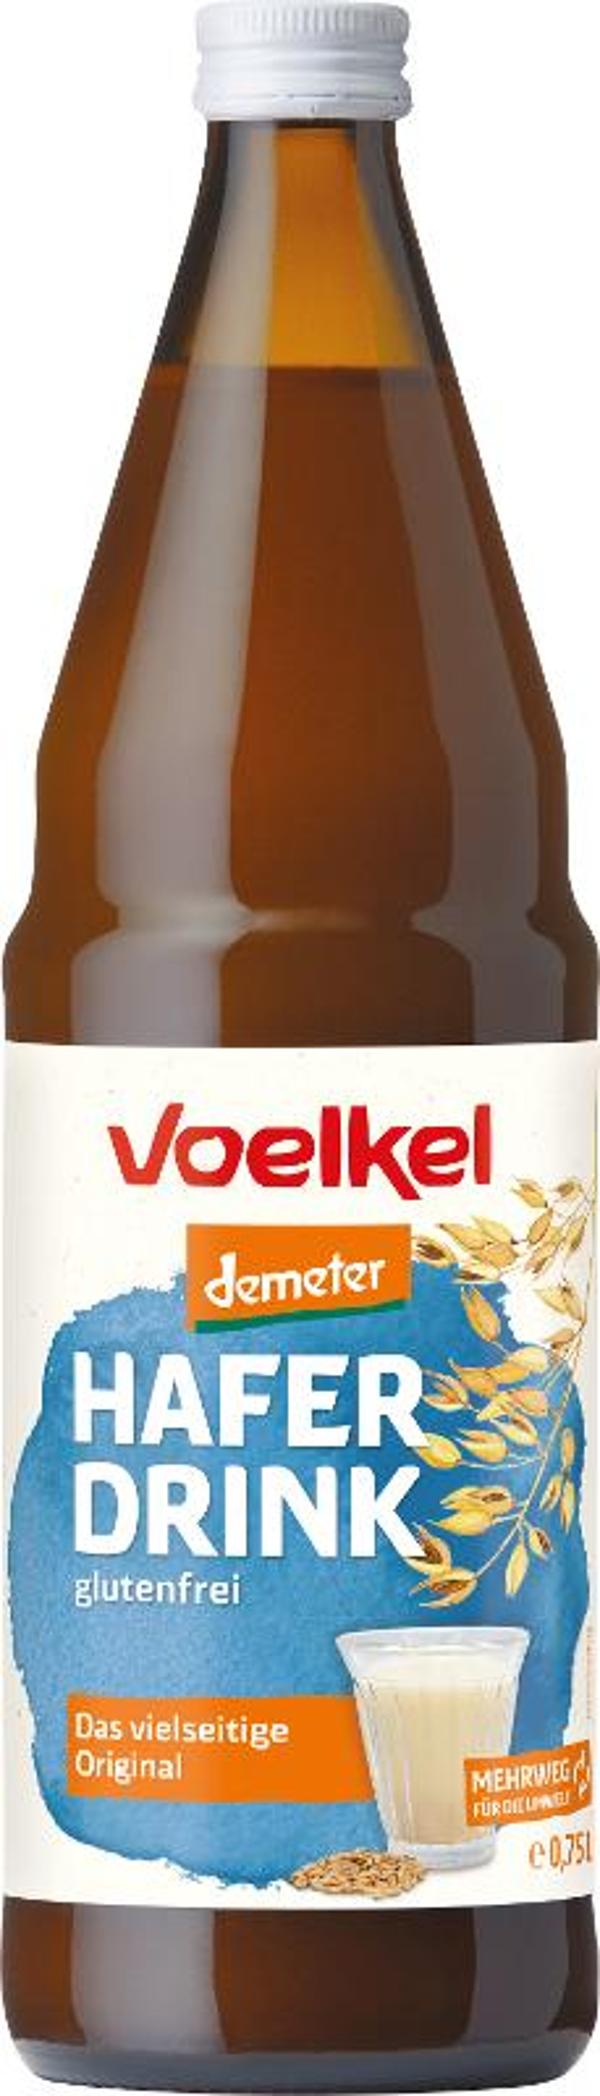 Produktfoto zu Haferdrink Flasche, Völkel, Deutschland, Pfand bitte zurück geben